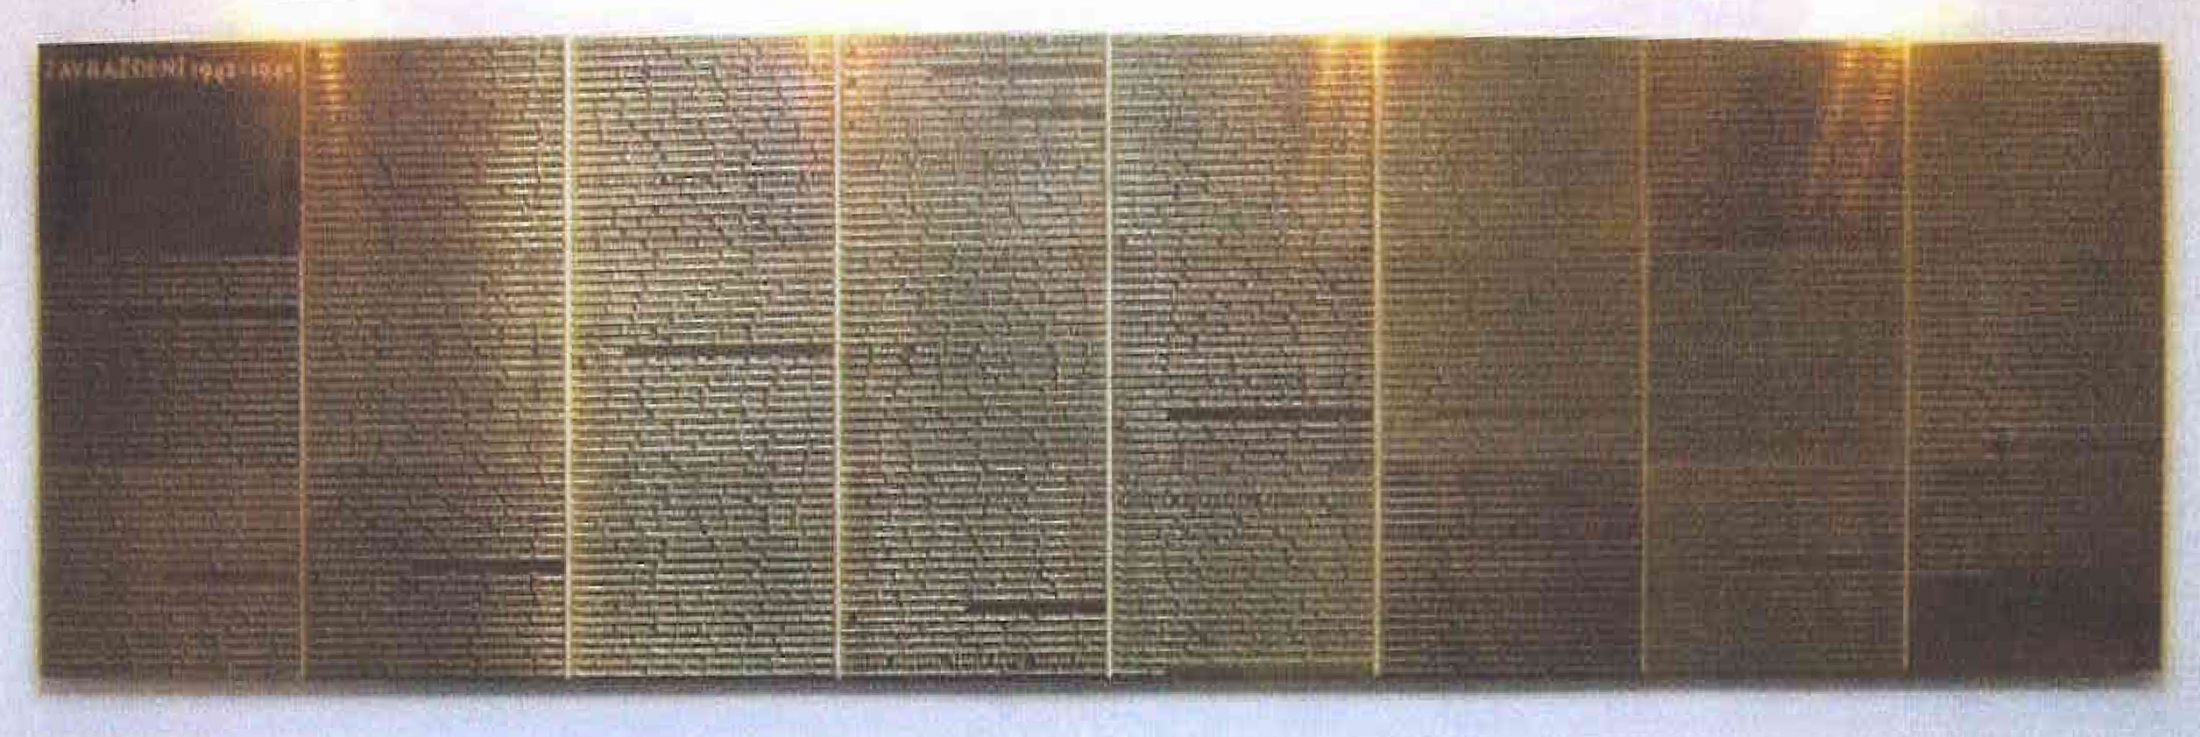 Tabuľa na počesť umučeným obetiam holokaustu